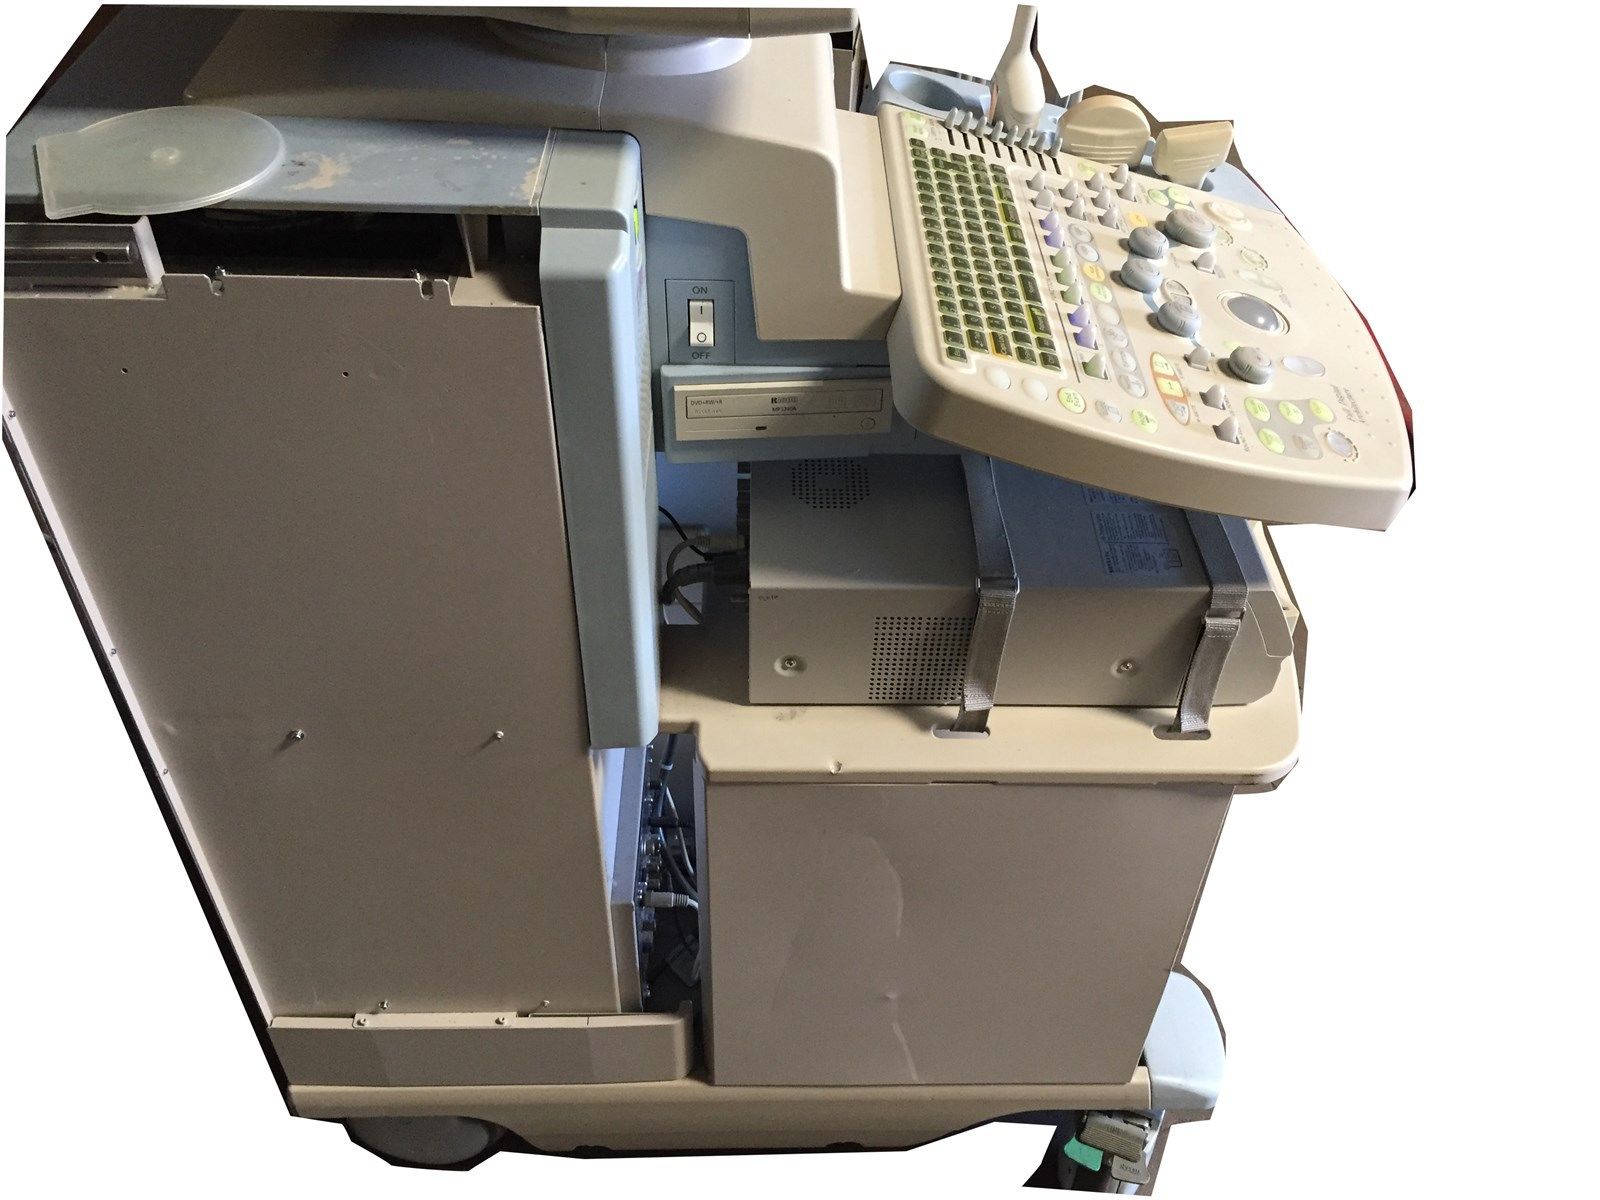 Hitachi Medical EUB-8500 EZU-MT24-S1 Hi Vision Digital Ultrasound Scanner+Probes DIAGNOSTIC ULTRASOUND MACHINES FOR SALE